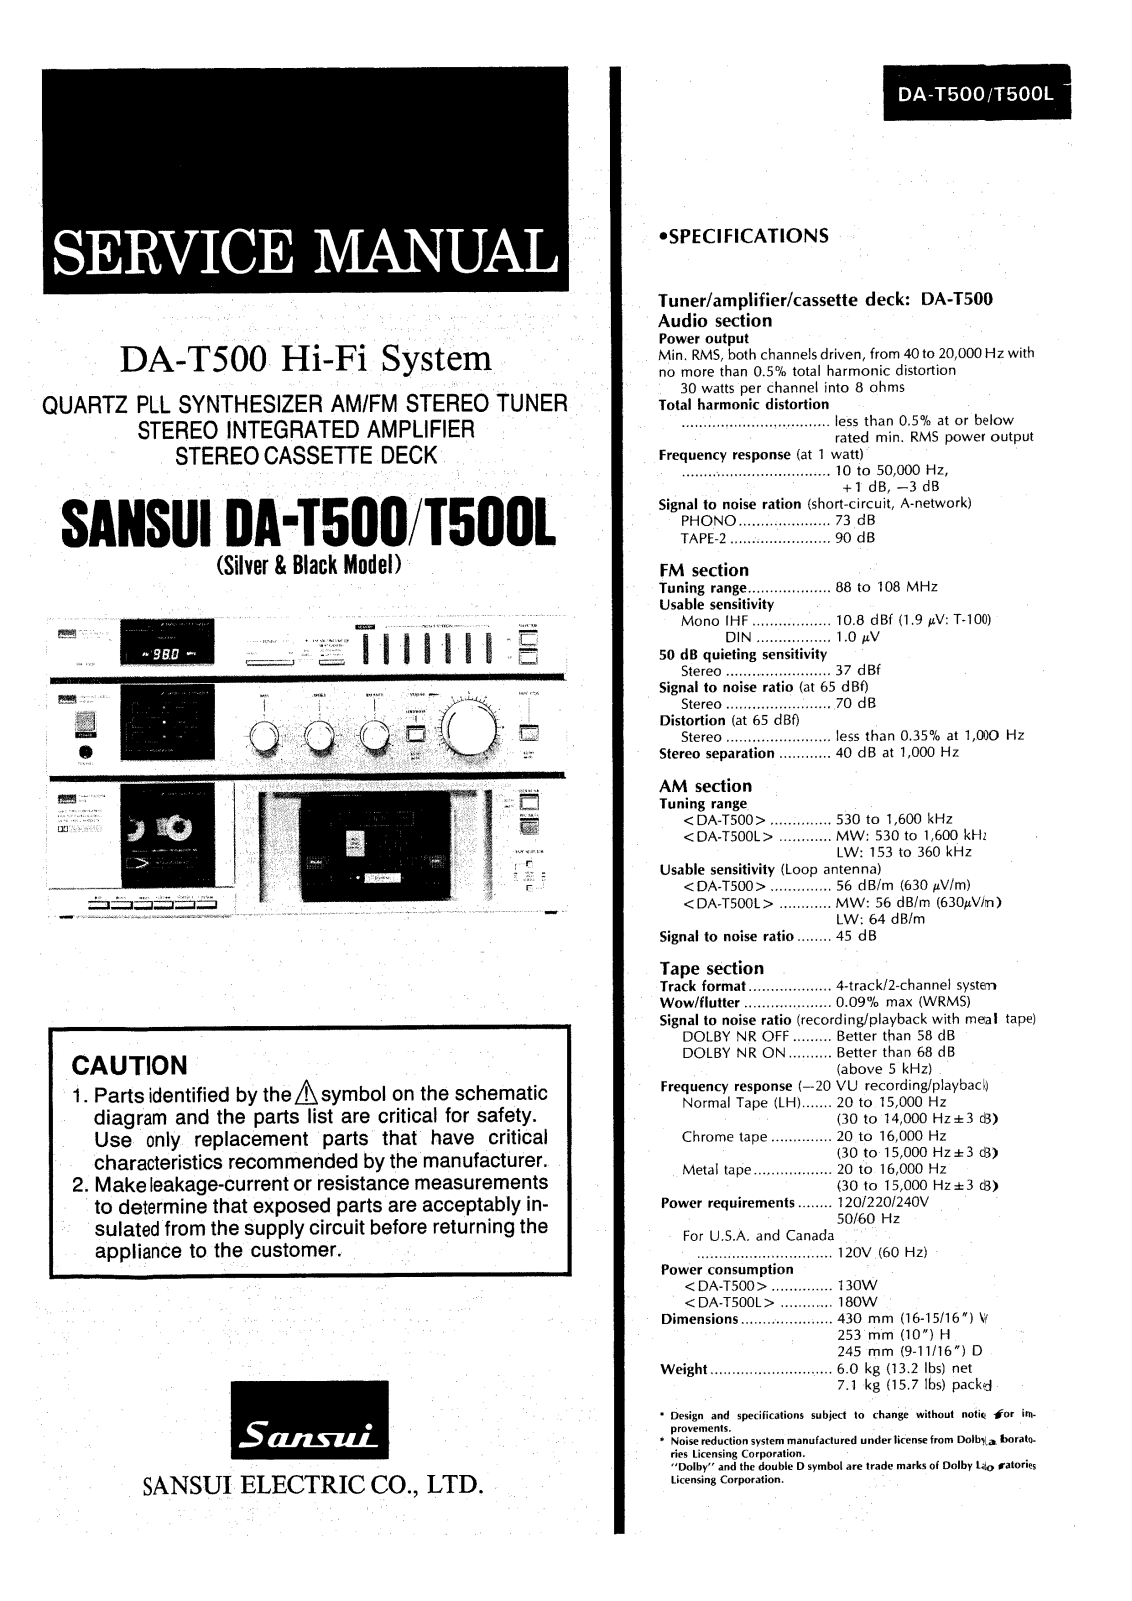 Sansui DAT-500, DAT-500-L Service manual